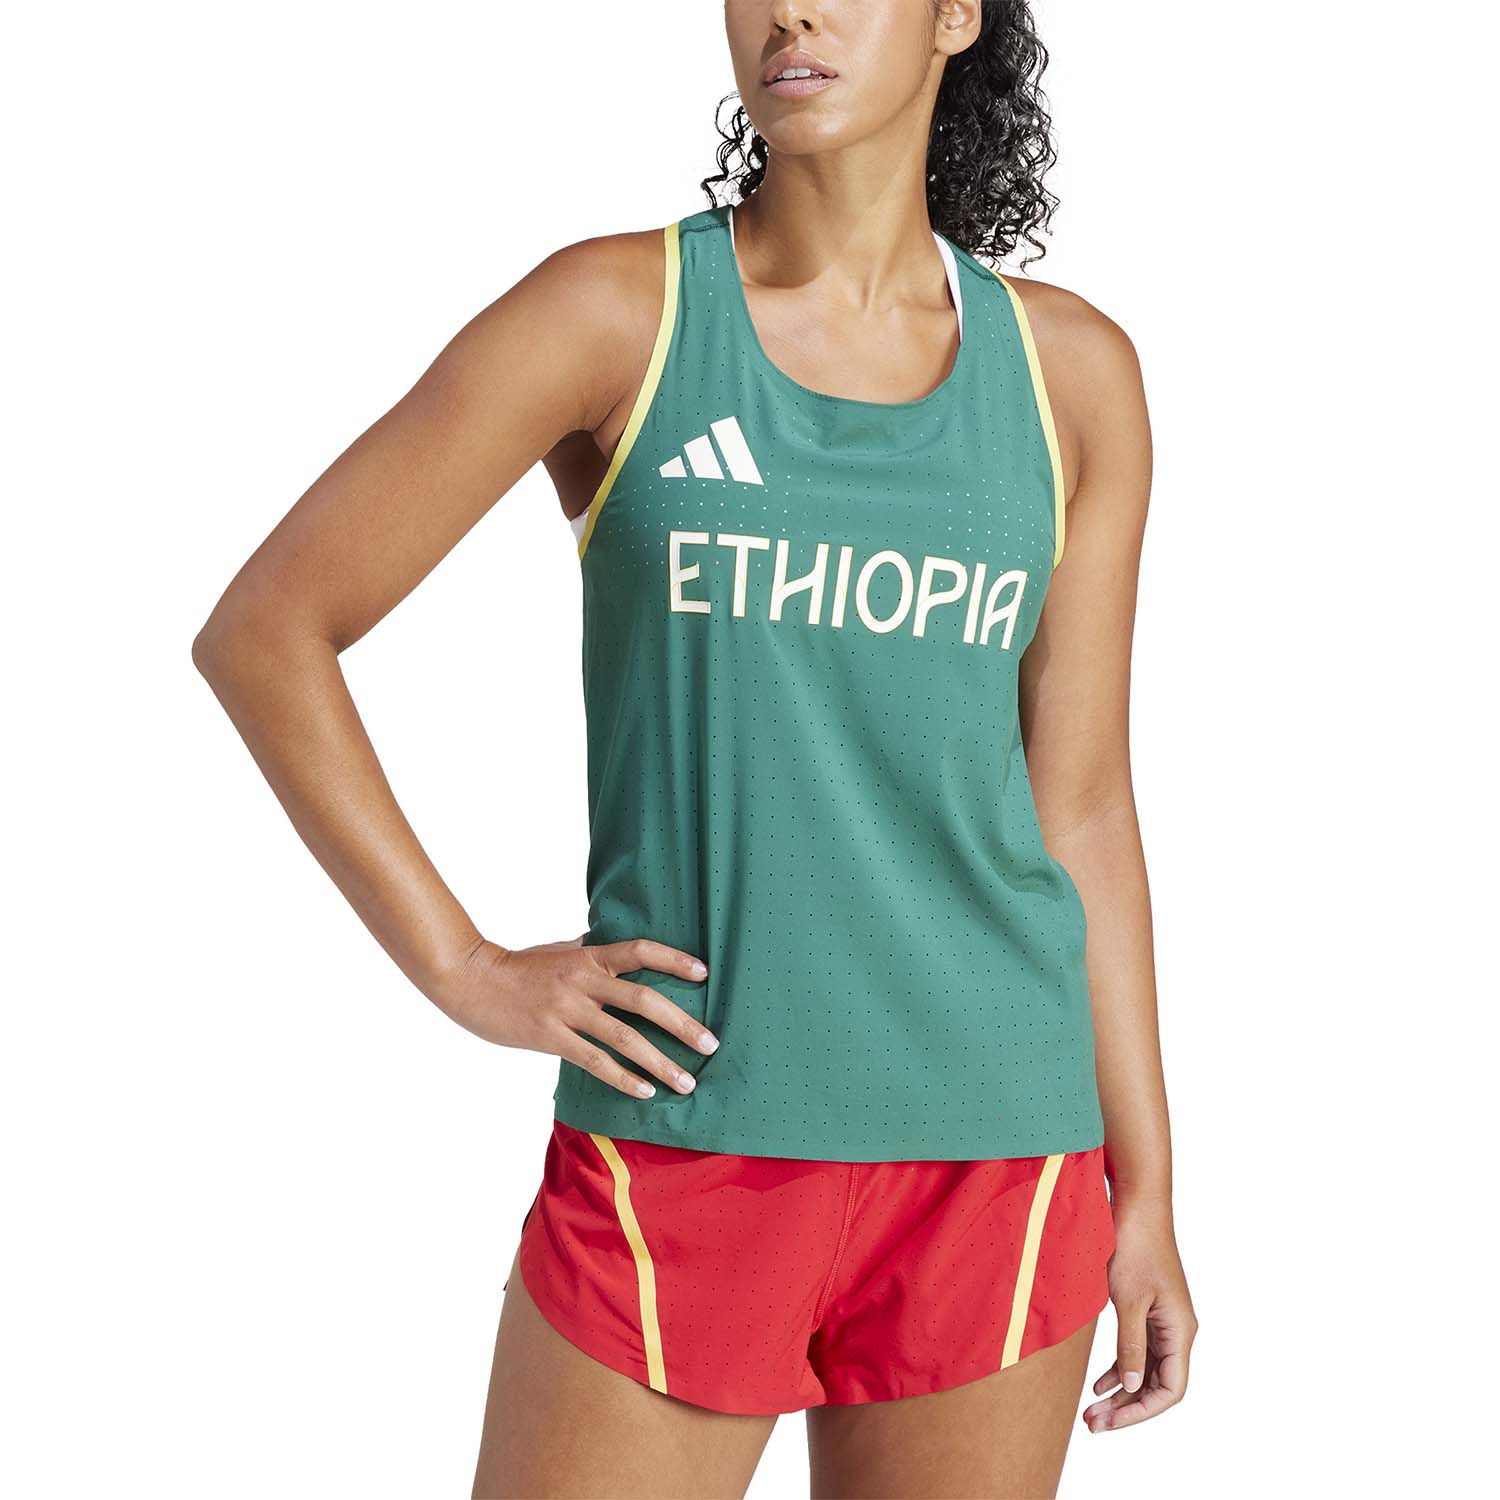 adidas Team Ethiopia Top - Cgreen